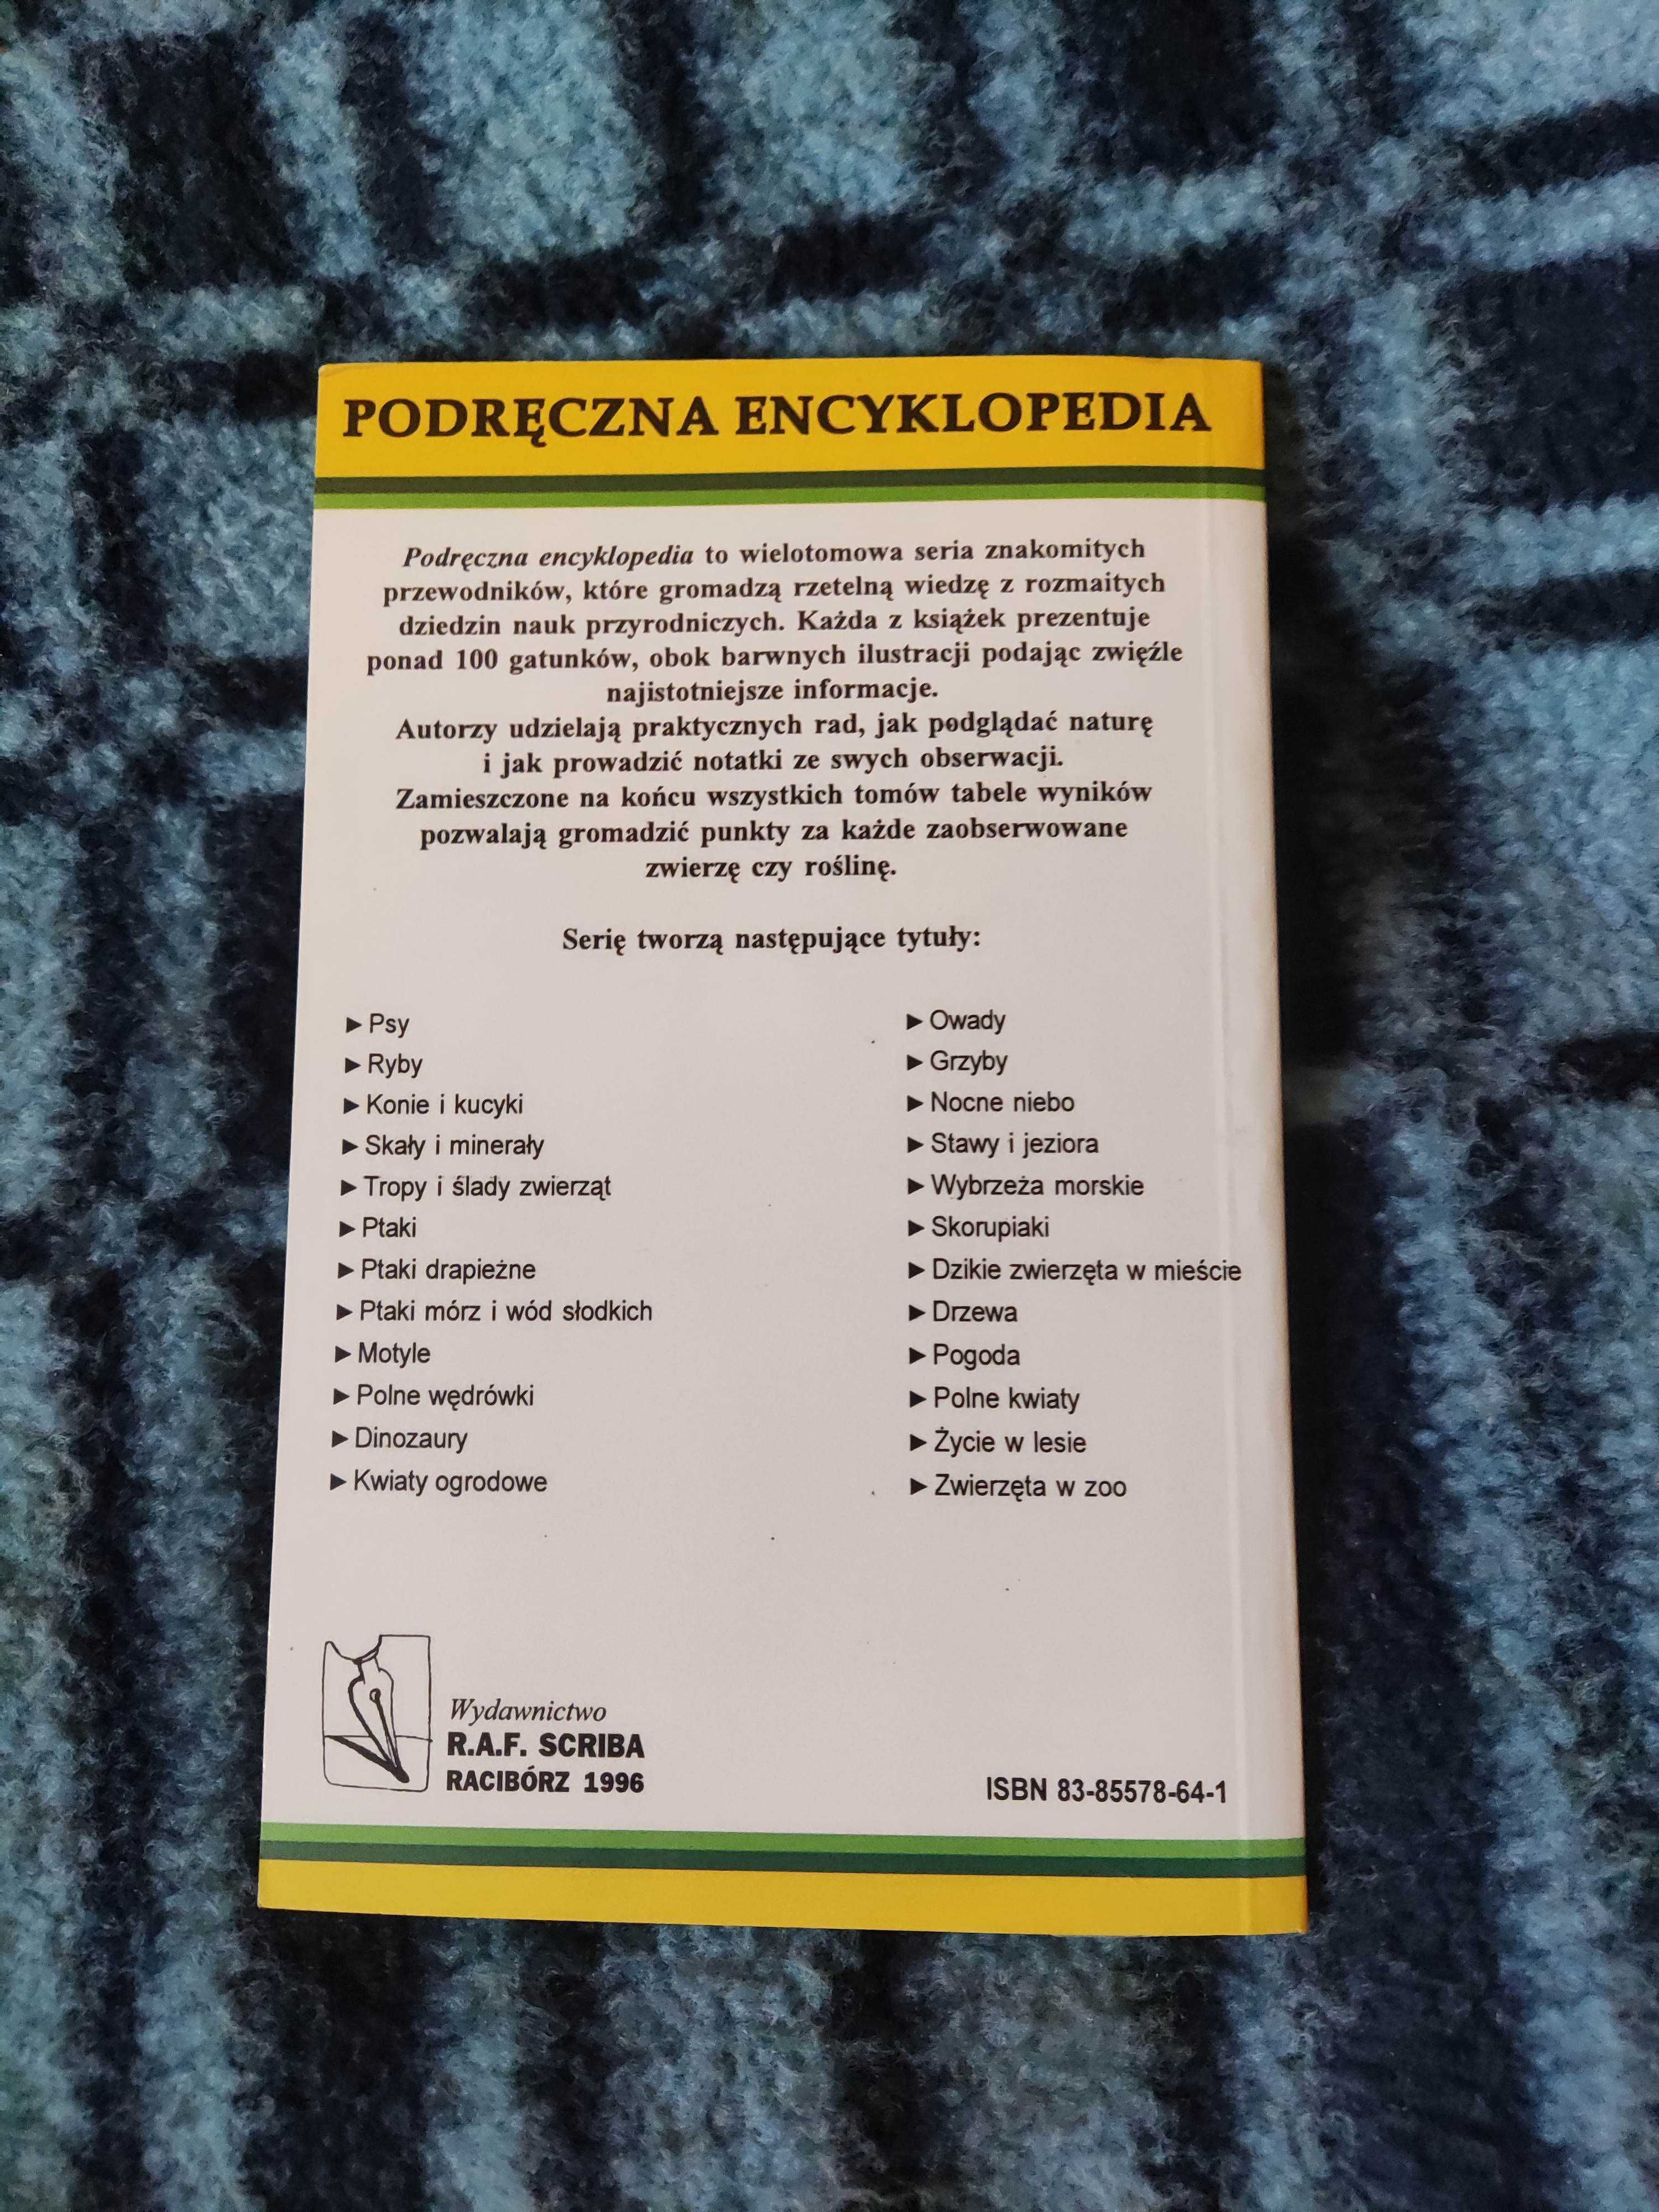 Grzyby Podręczna Encyklopedia 1996